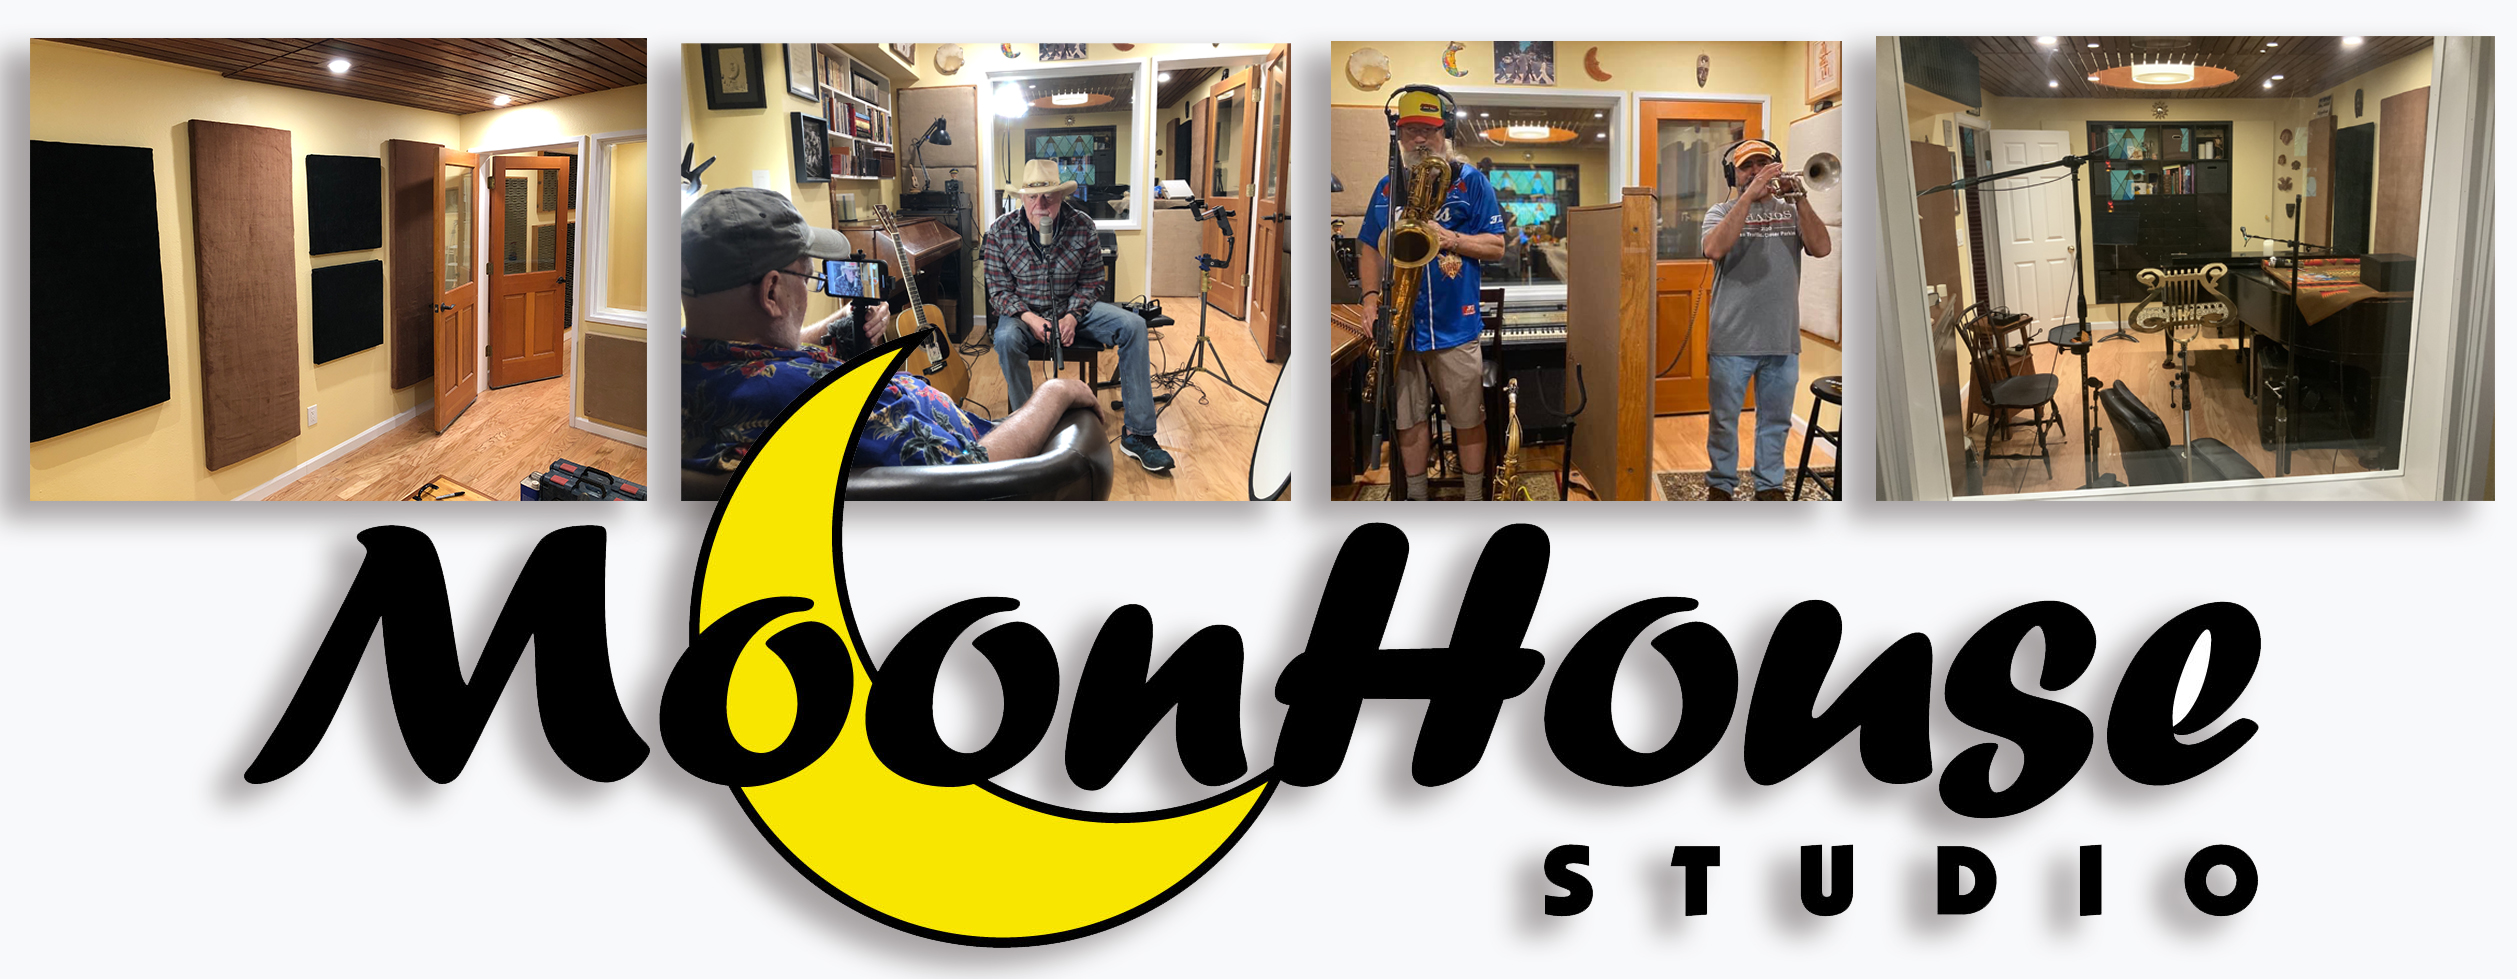 MoonHouse Studio